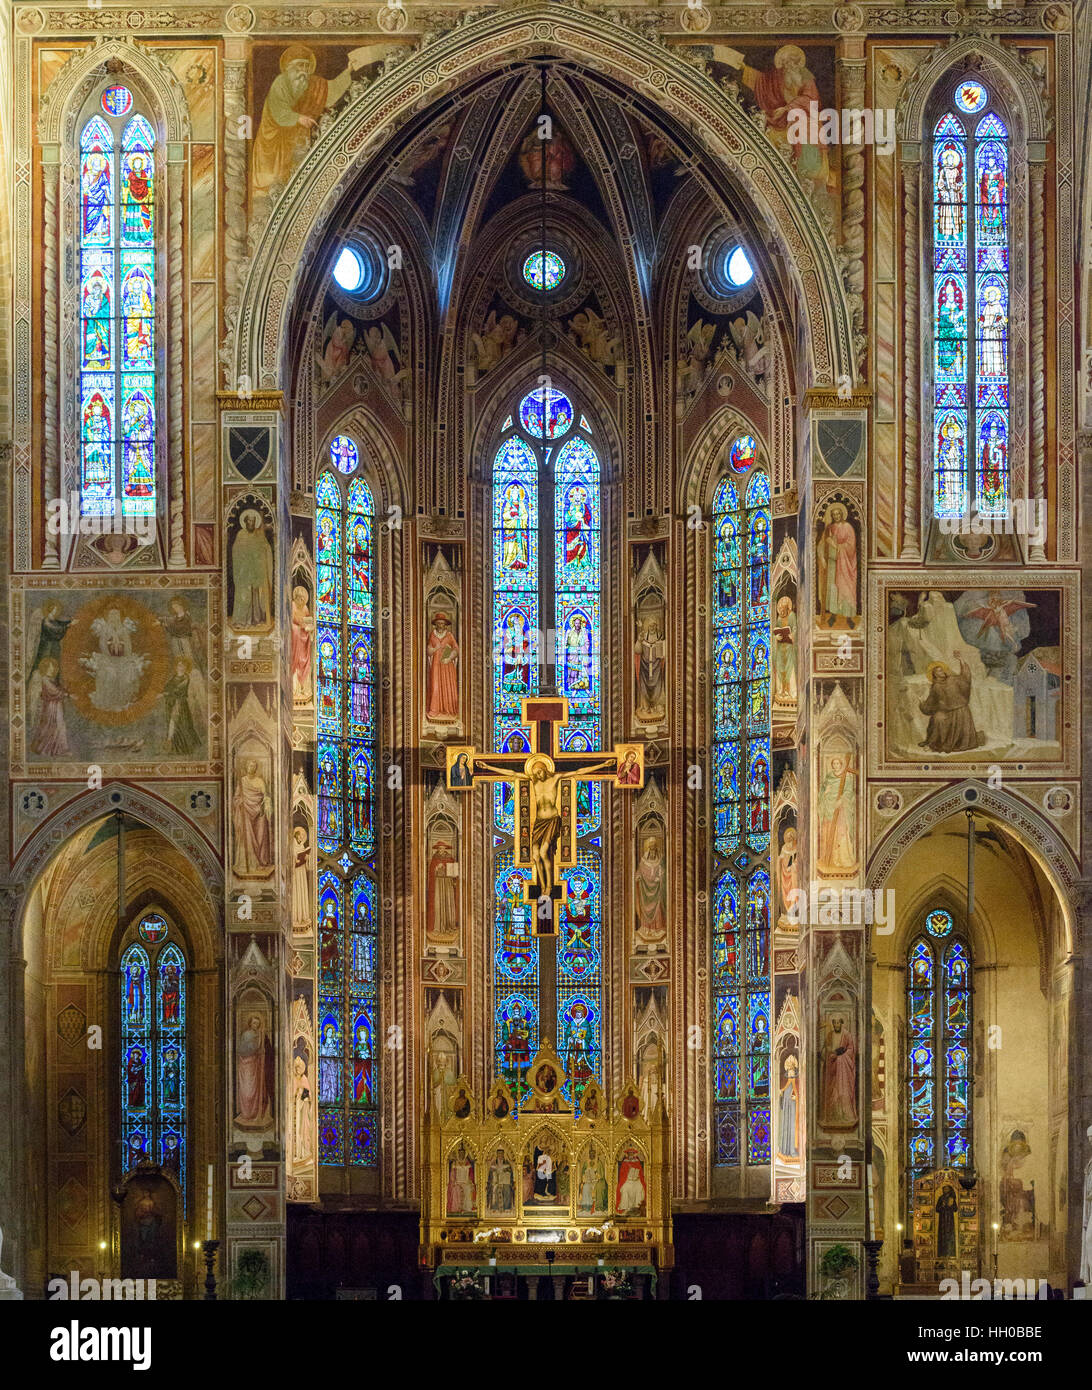 Firenze. L'Italia. Basilica di Santa Croce, la Cappella Maggiore (Principale cappella del coro), decorata con affreschi di Agnolo Gaddi Foto Stock